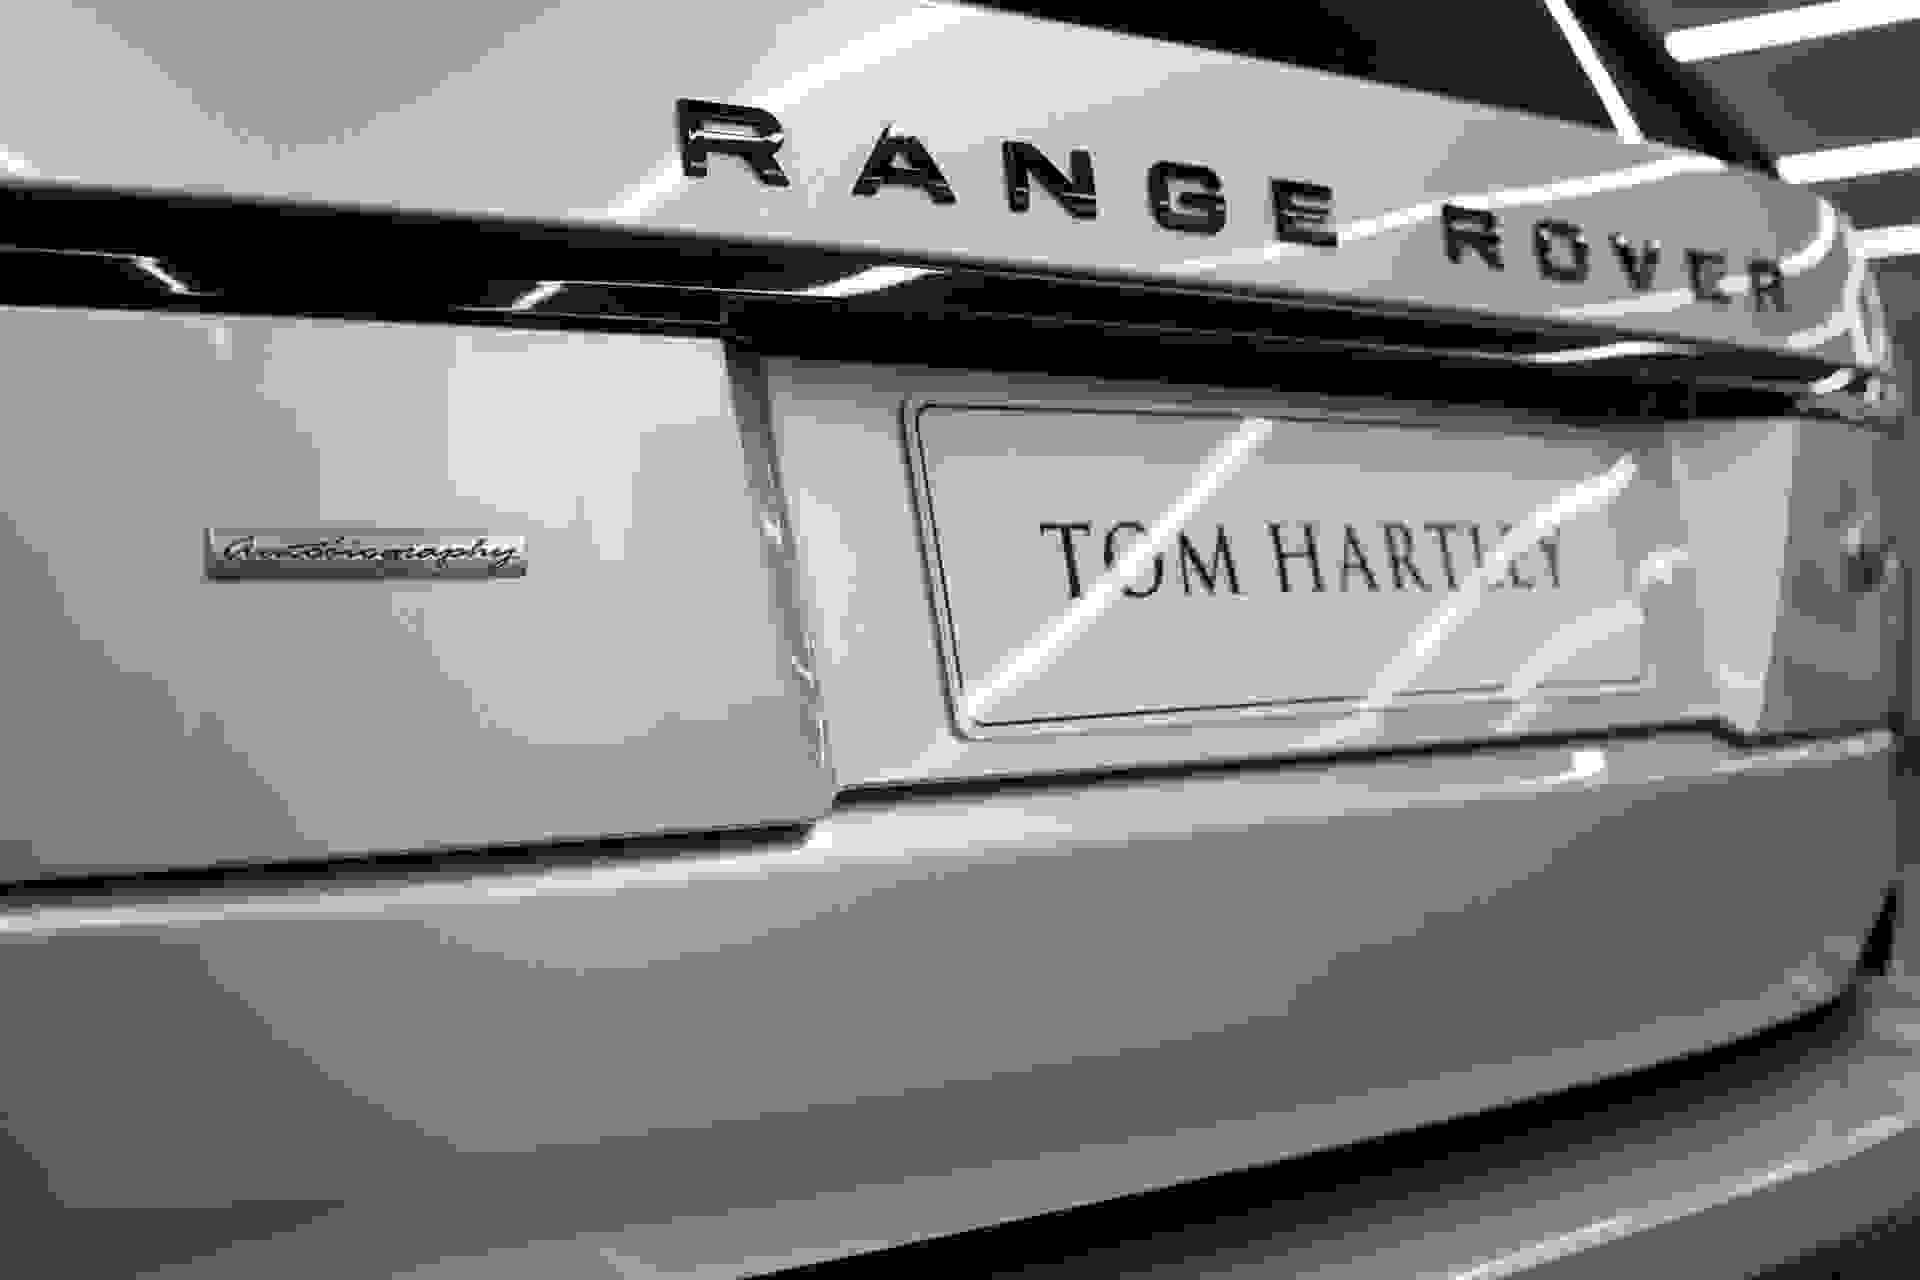 Land Rover RANGE ROVER Photo 2a88a843-4cac-4038-b931-16fc9b0220db.jpg